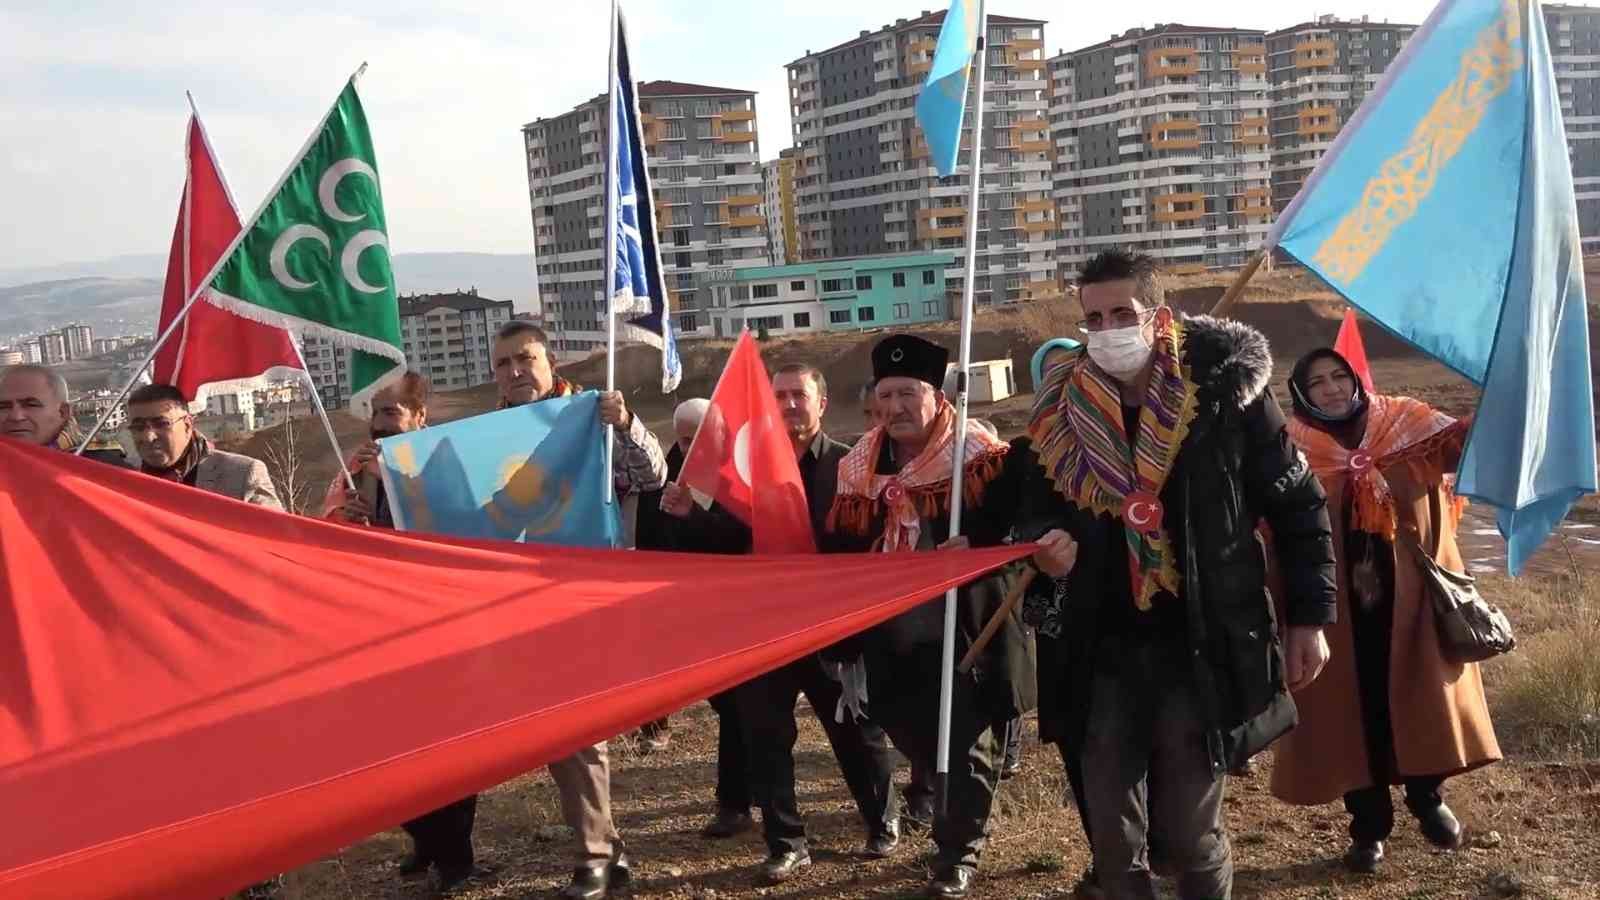 61a61ef50f535-Türk ve Kazakistan bayraklarıyla yürüdüler, birlik ve beraberliğe dikkat çektiler.jpg